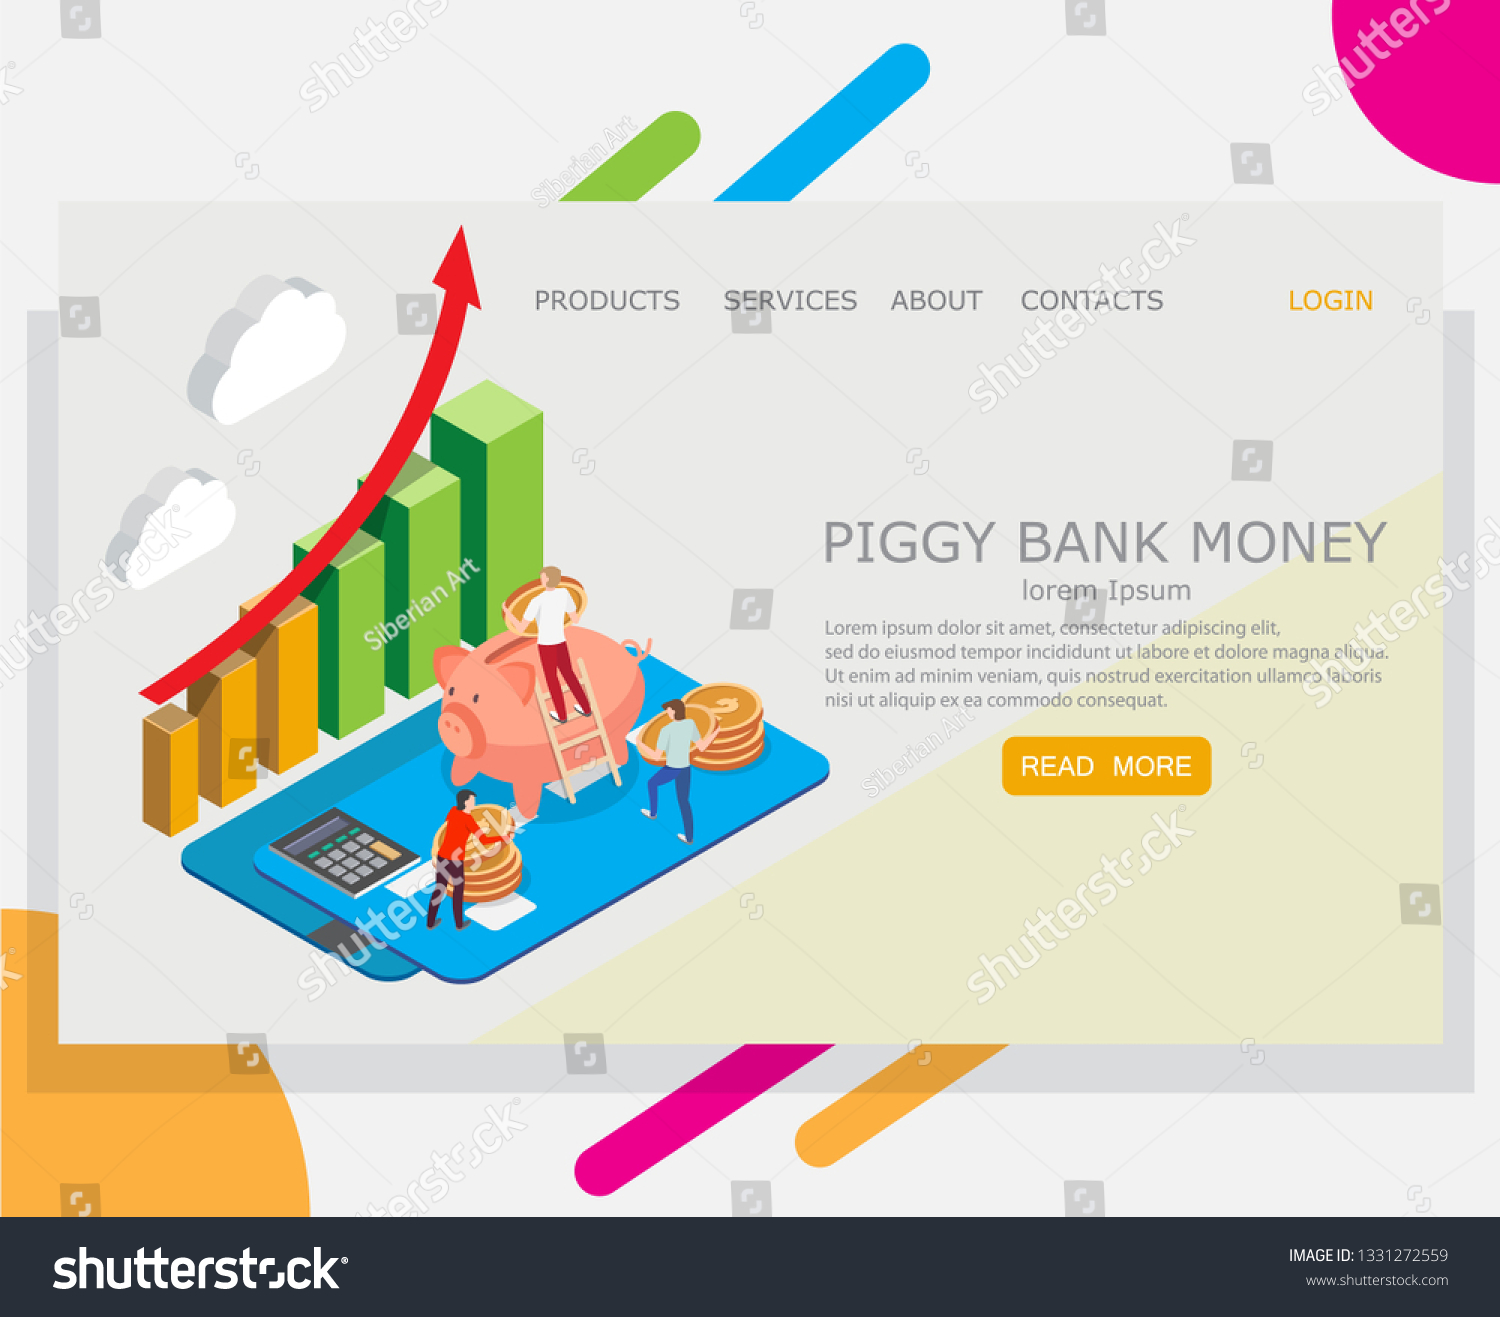 piggy bank login